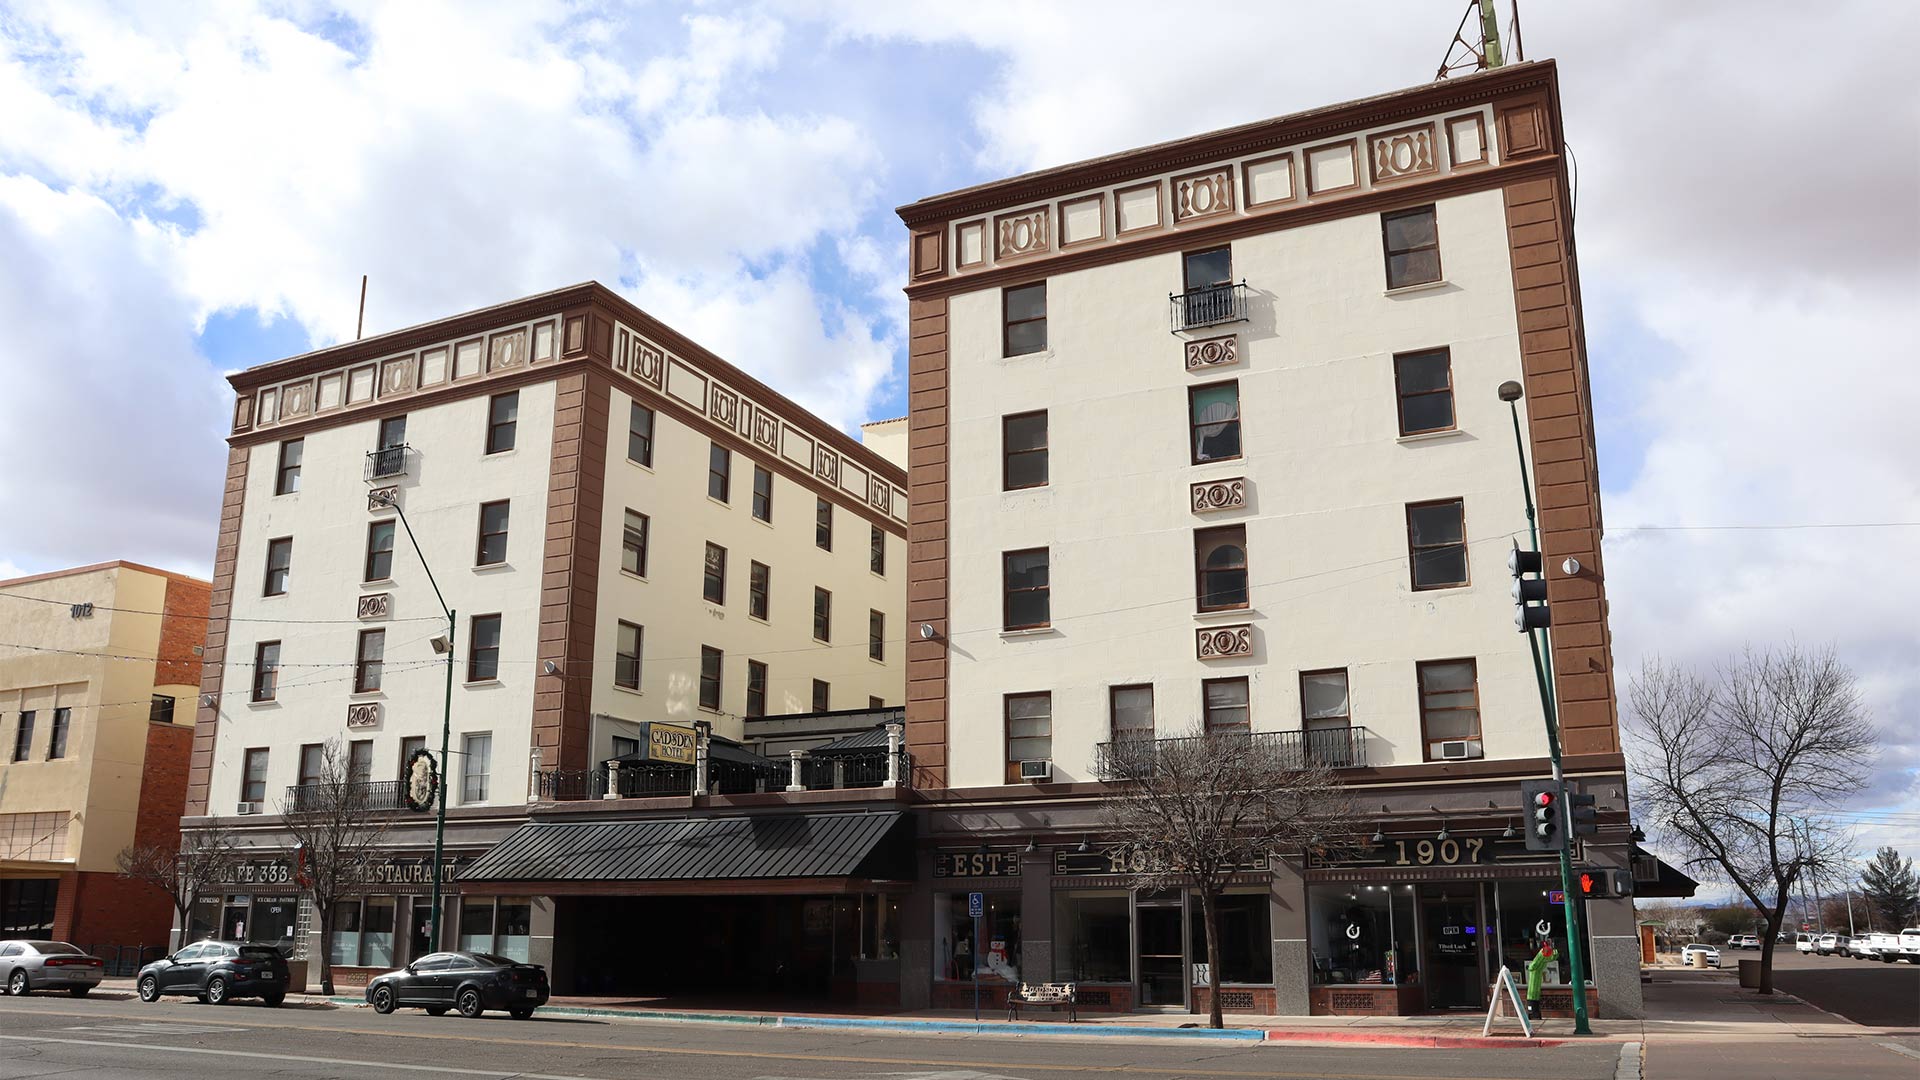 The Gadsden Hotel in Douglas, AZ. January 4, 2023.